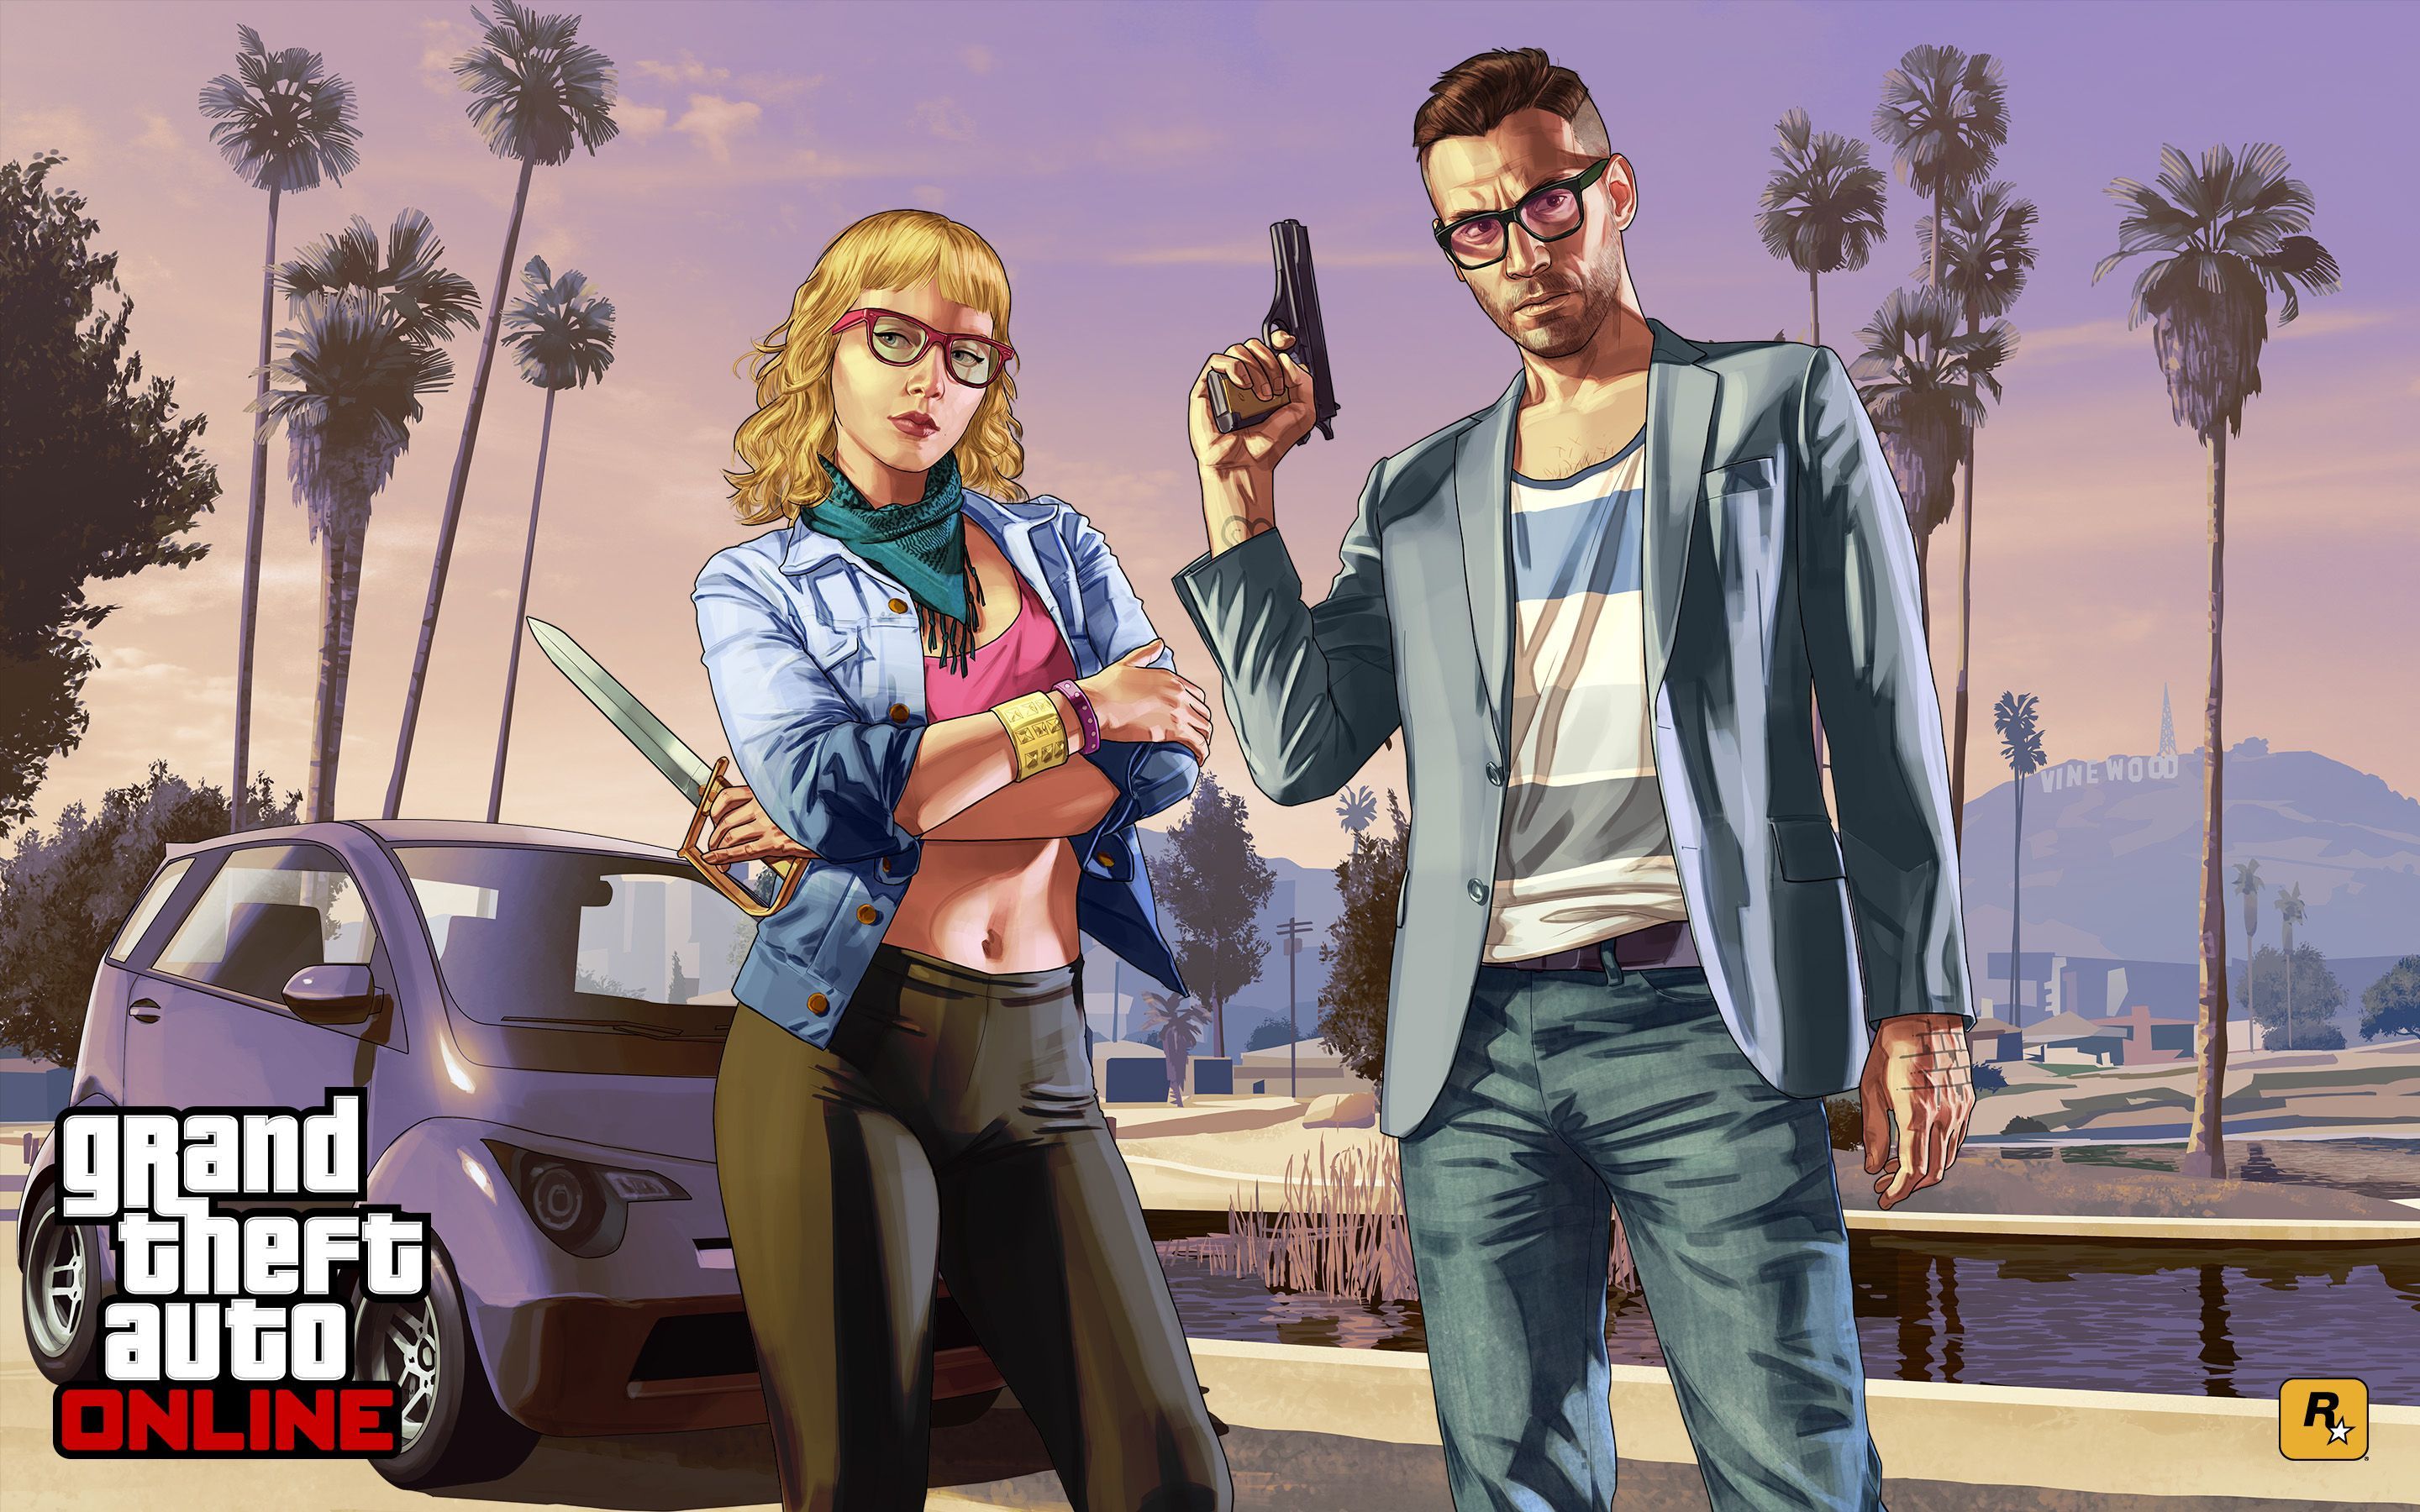 Grand Theft Auto Online Wallpaper Photo. Arte de jogos, Gta, Arte